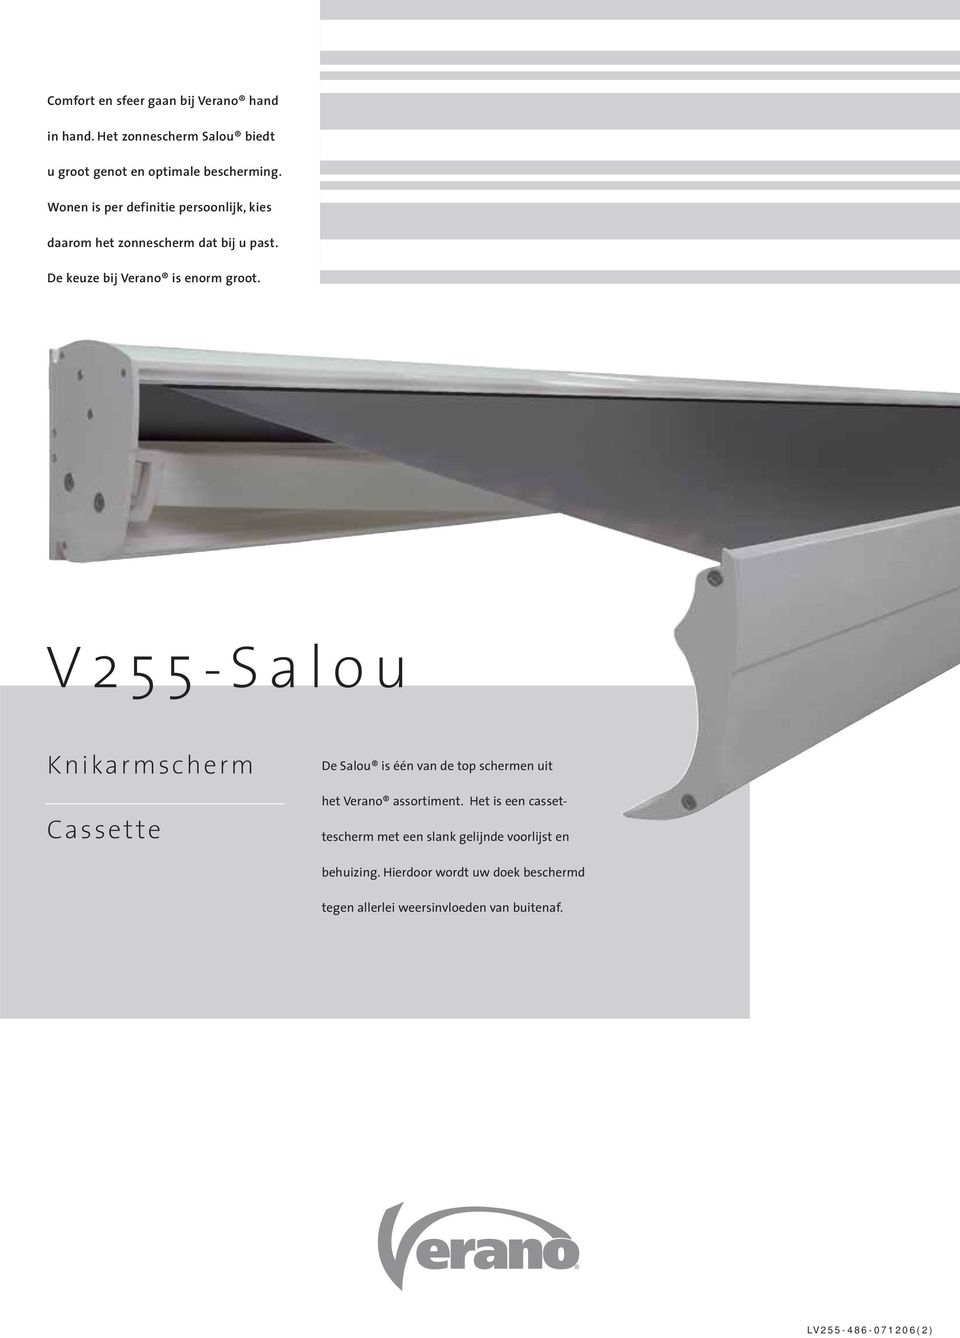 V255-Salou Knikarmscherm Cassette De Salou is één van de top schermen uit het Verano assortiment.